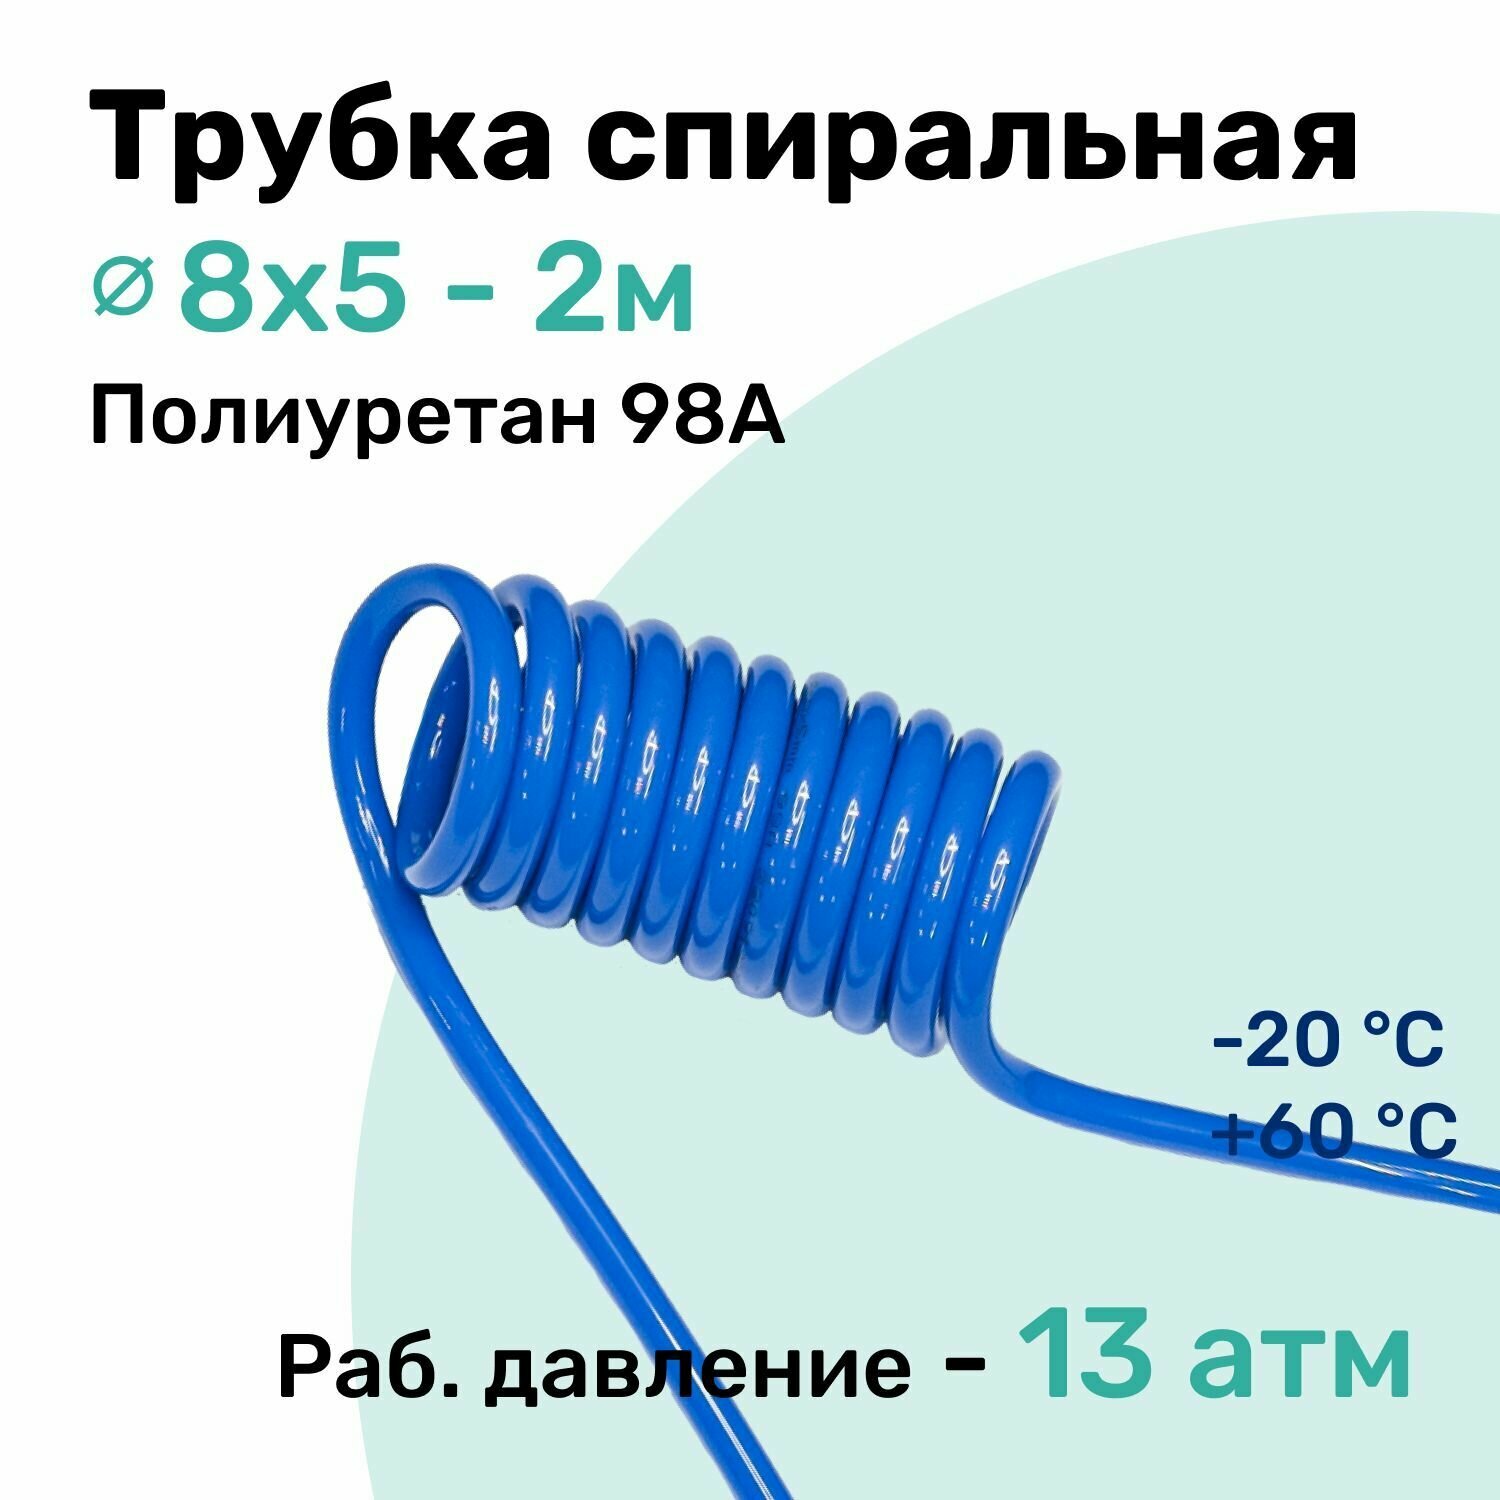 Пневмотрубка спиральная 8x5мм, полиуретановая PU98A, 2м, 13 атм, Синий, Шланг спиральный пневматический NBPT